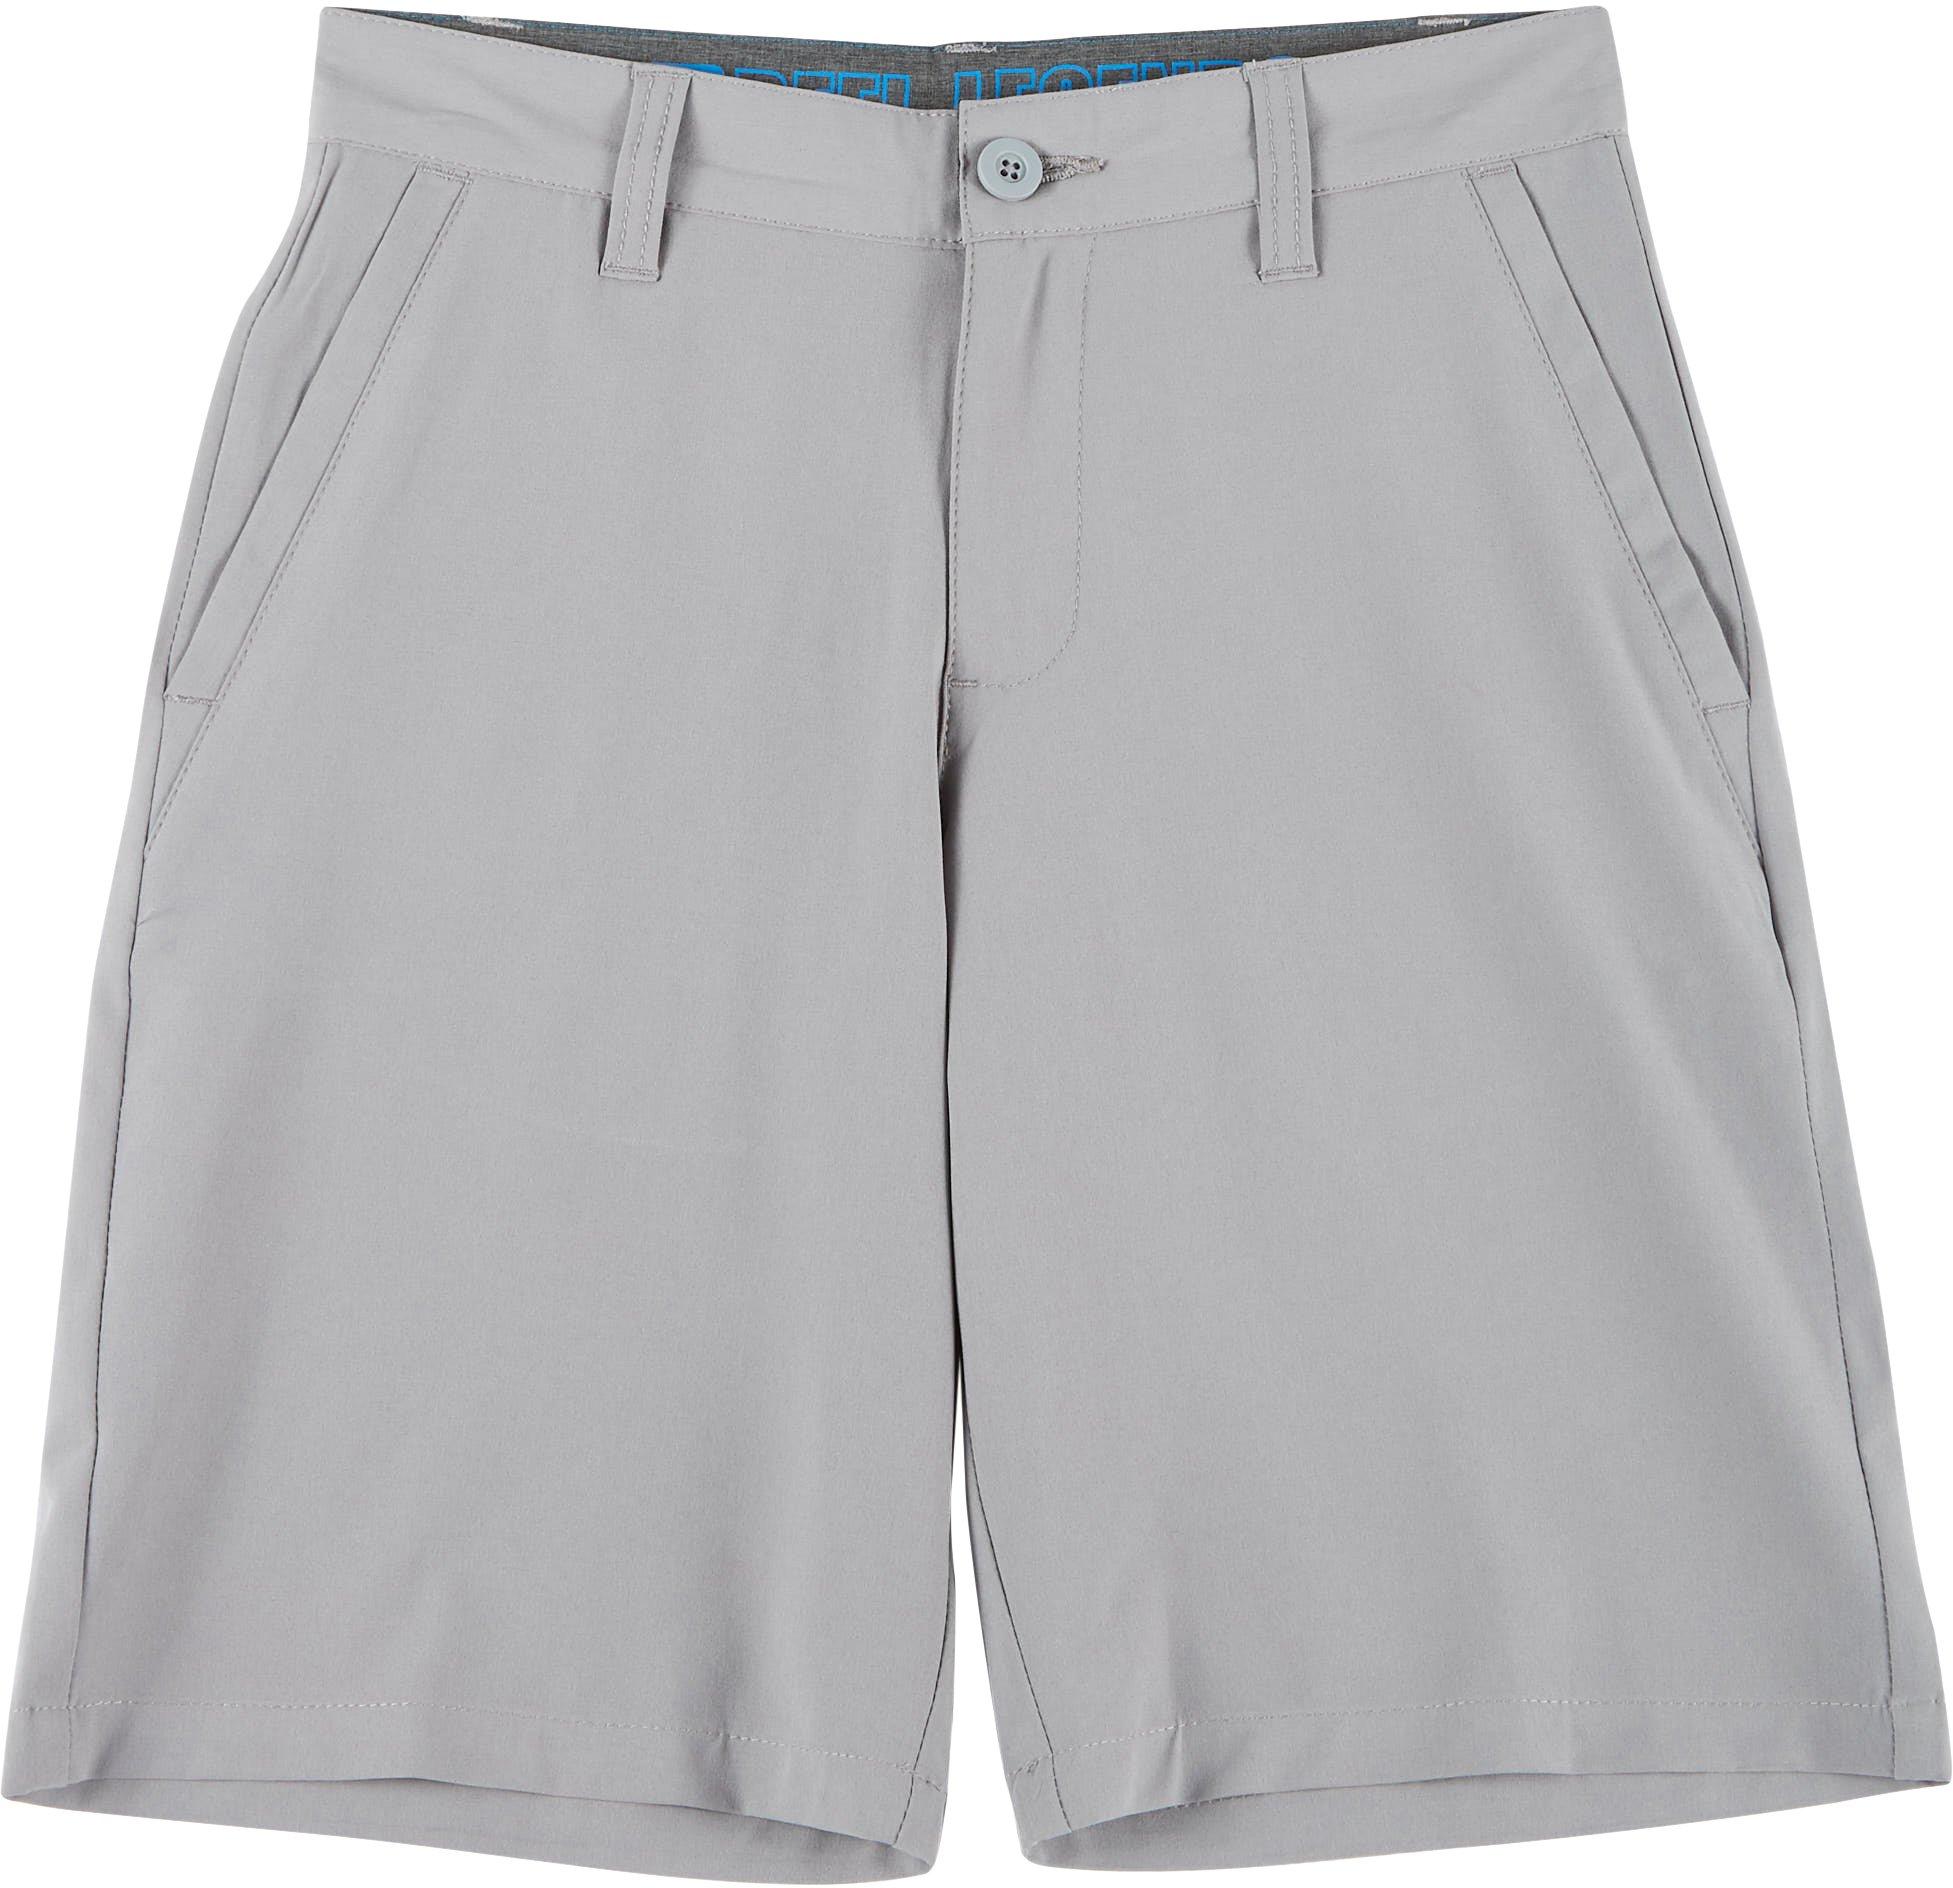 Reel Legends Big Boys Solid Hybrid Shorts - Grey - 20